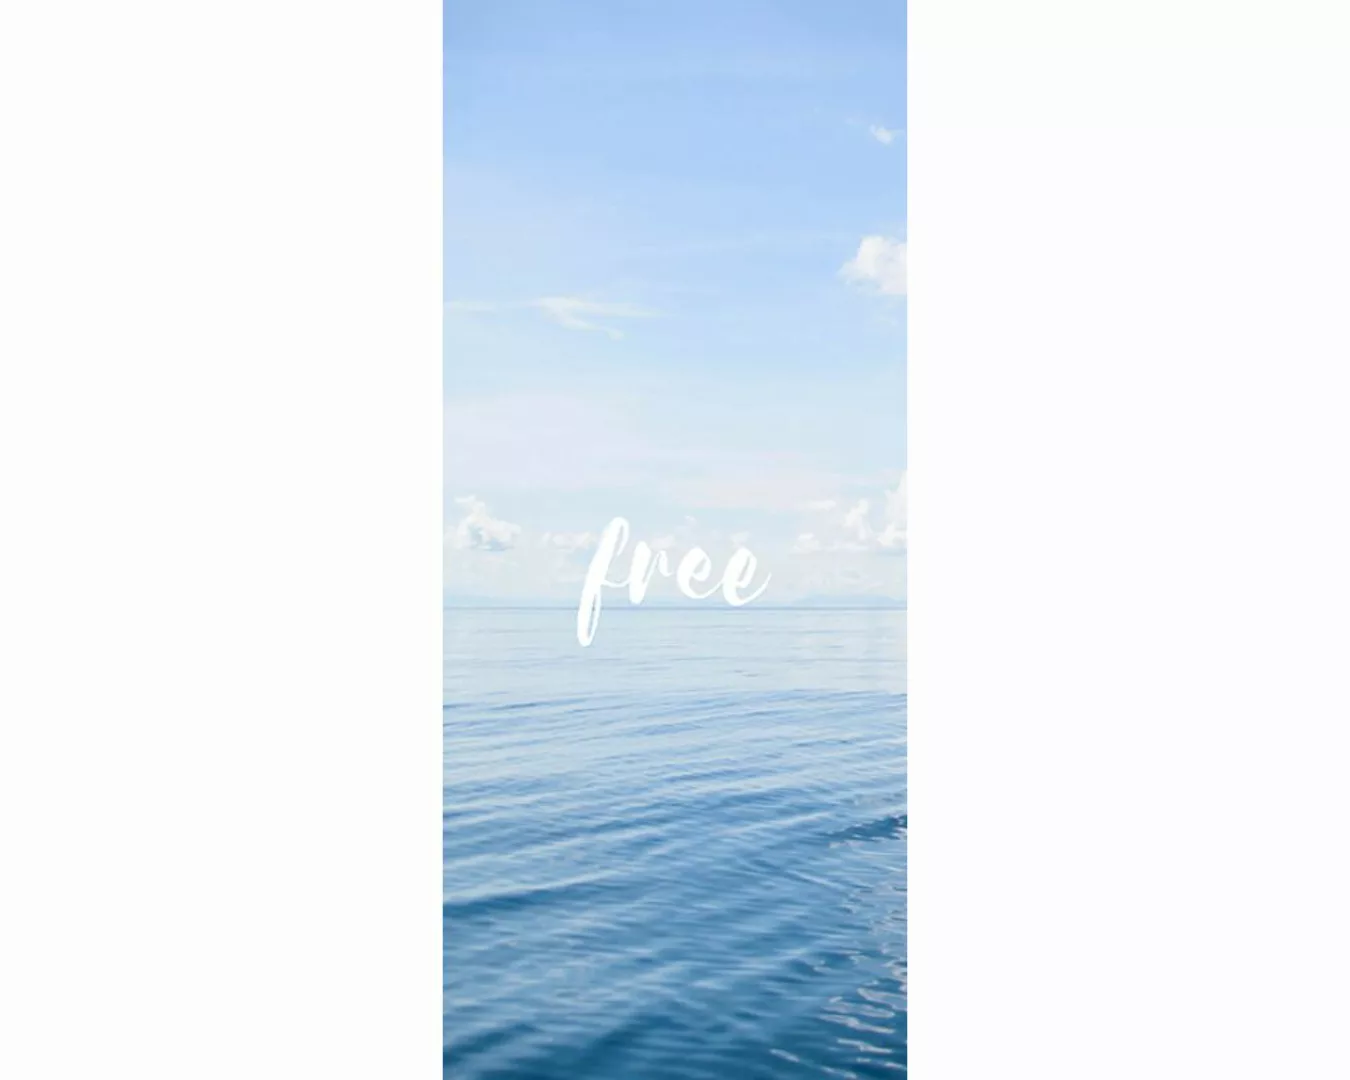 Trtapete "Free" 0,91x2,11 m / selbstklebende Folie günstig online kaufen